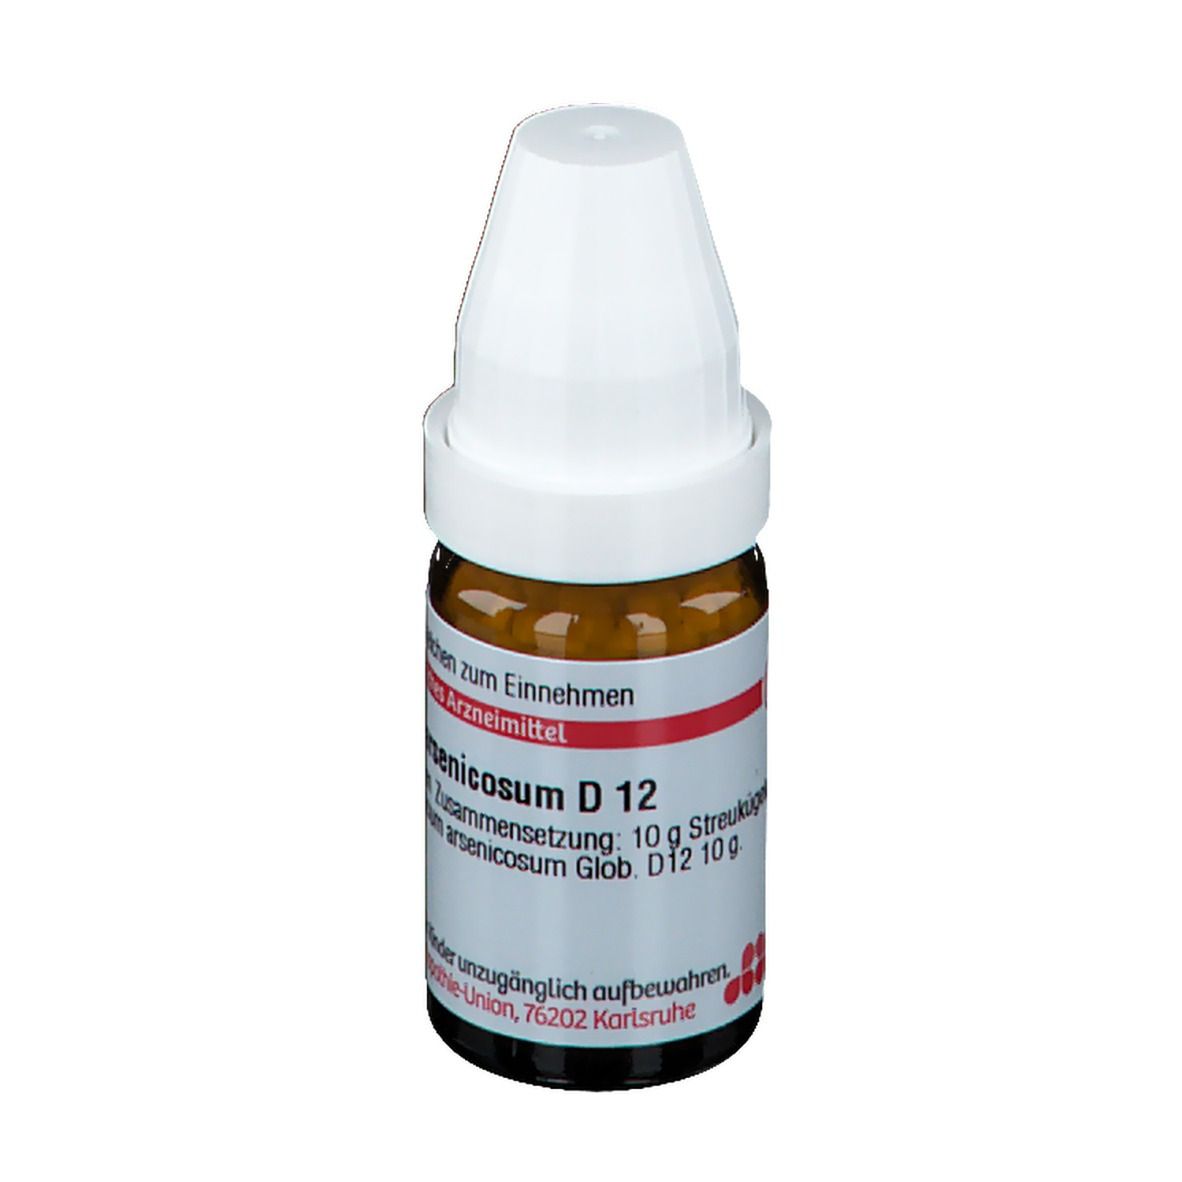 DHU Calcium Arsenicosum D12